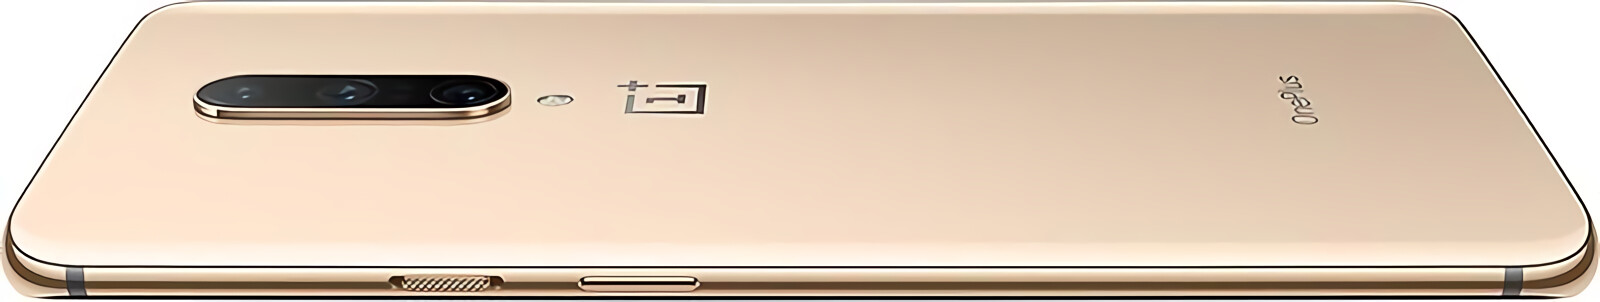 OnePlus 7 Pro 256GB (12GB RAM)